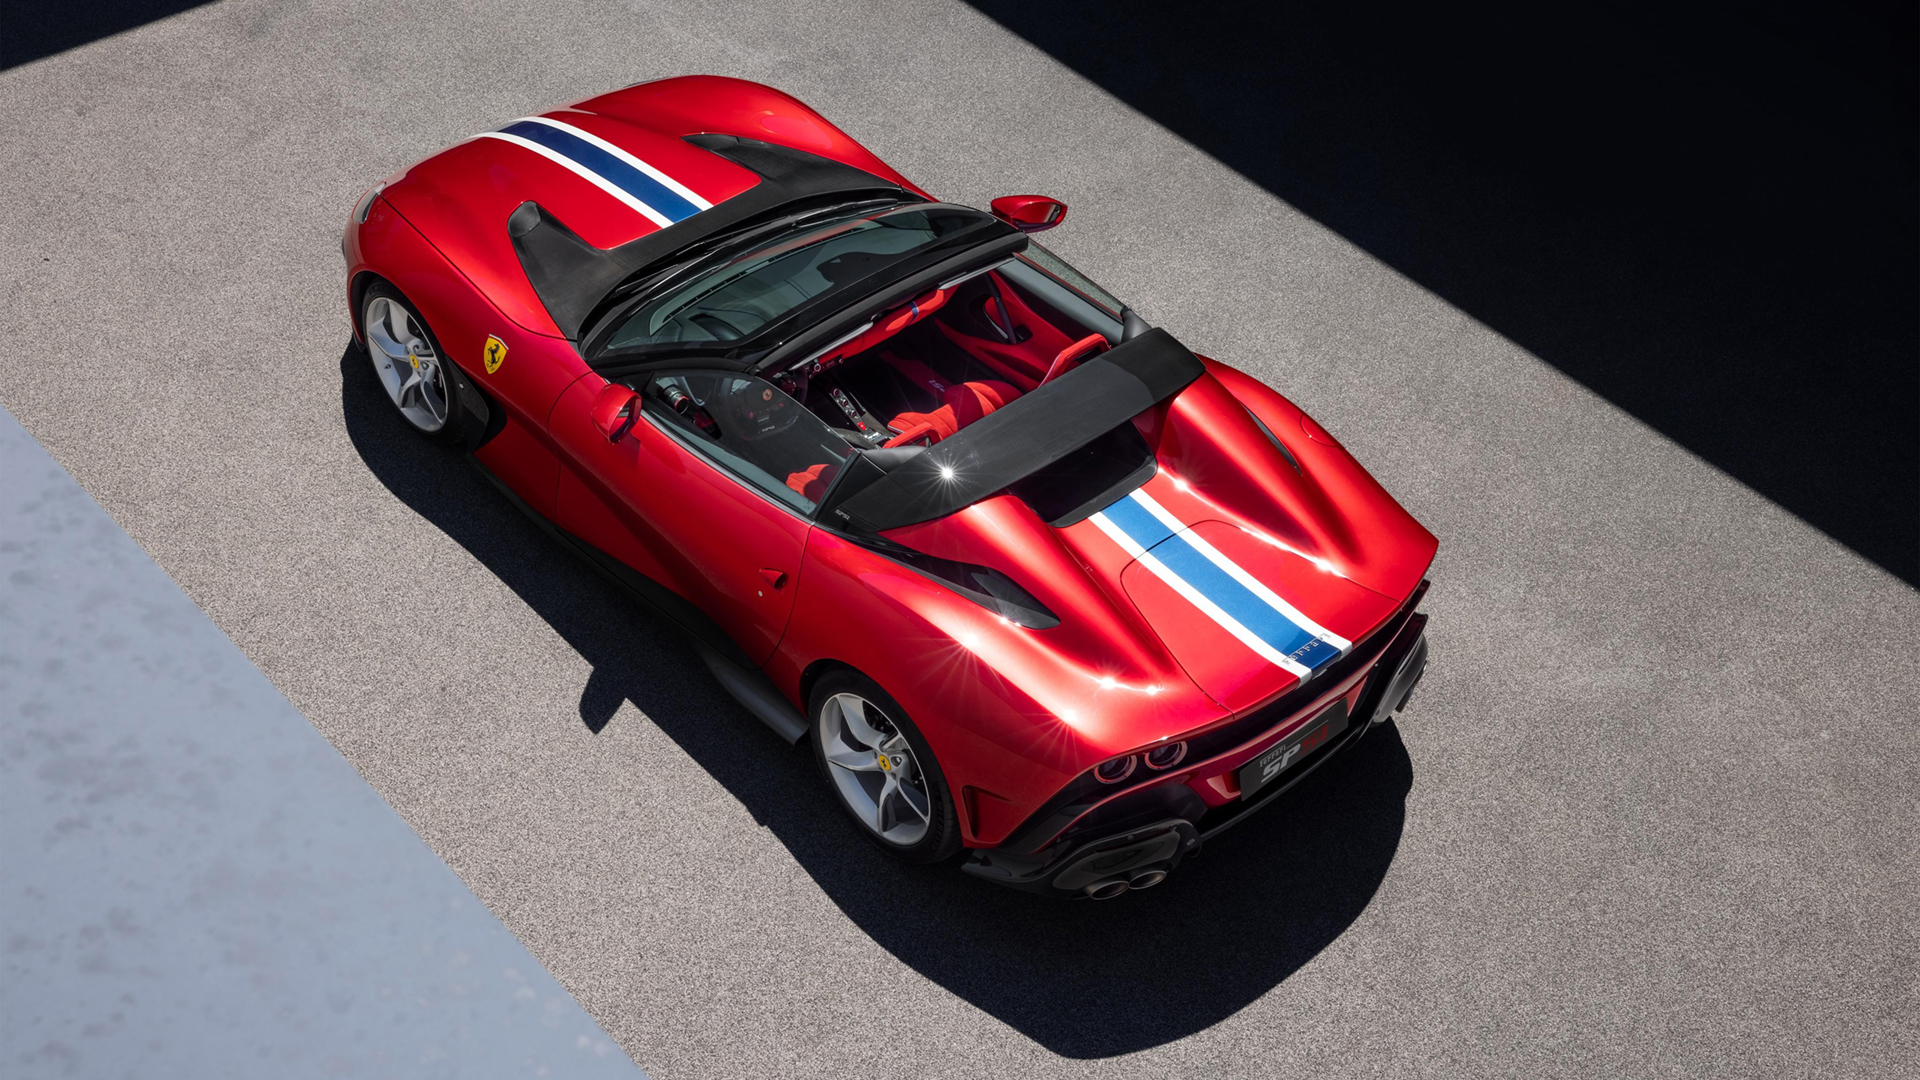 Los modelos únicos se desarrollan sobre la base de otro auto de Ferrari, del cual se mantiene motor, disposición y chasis